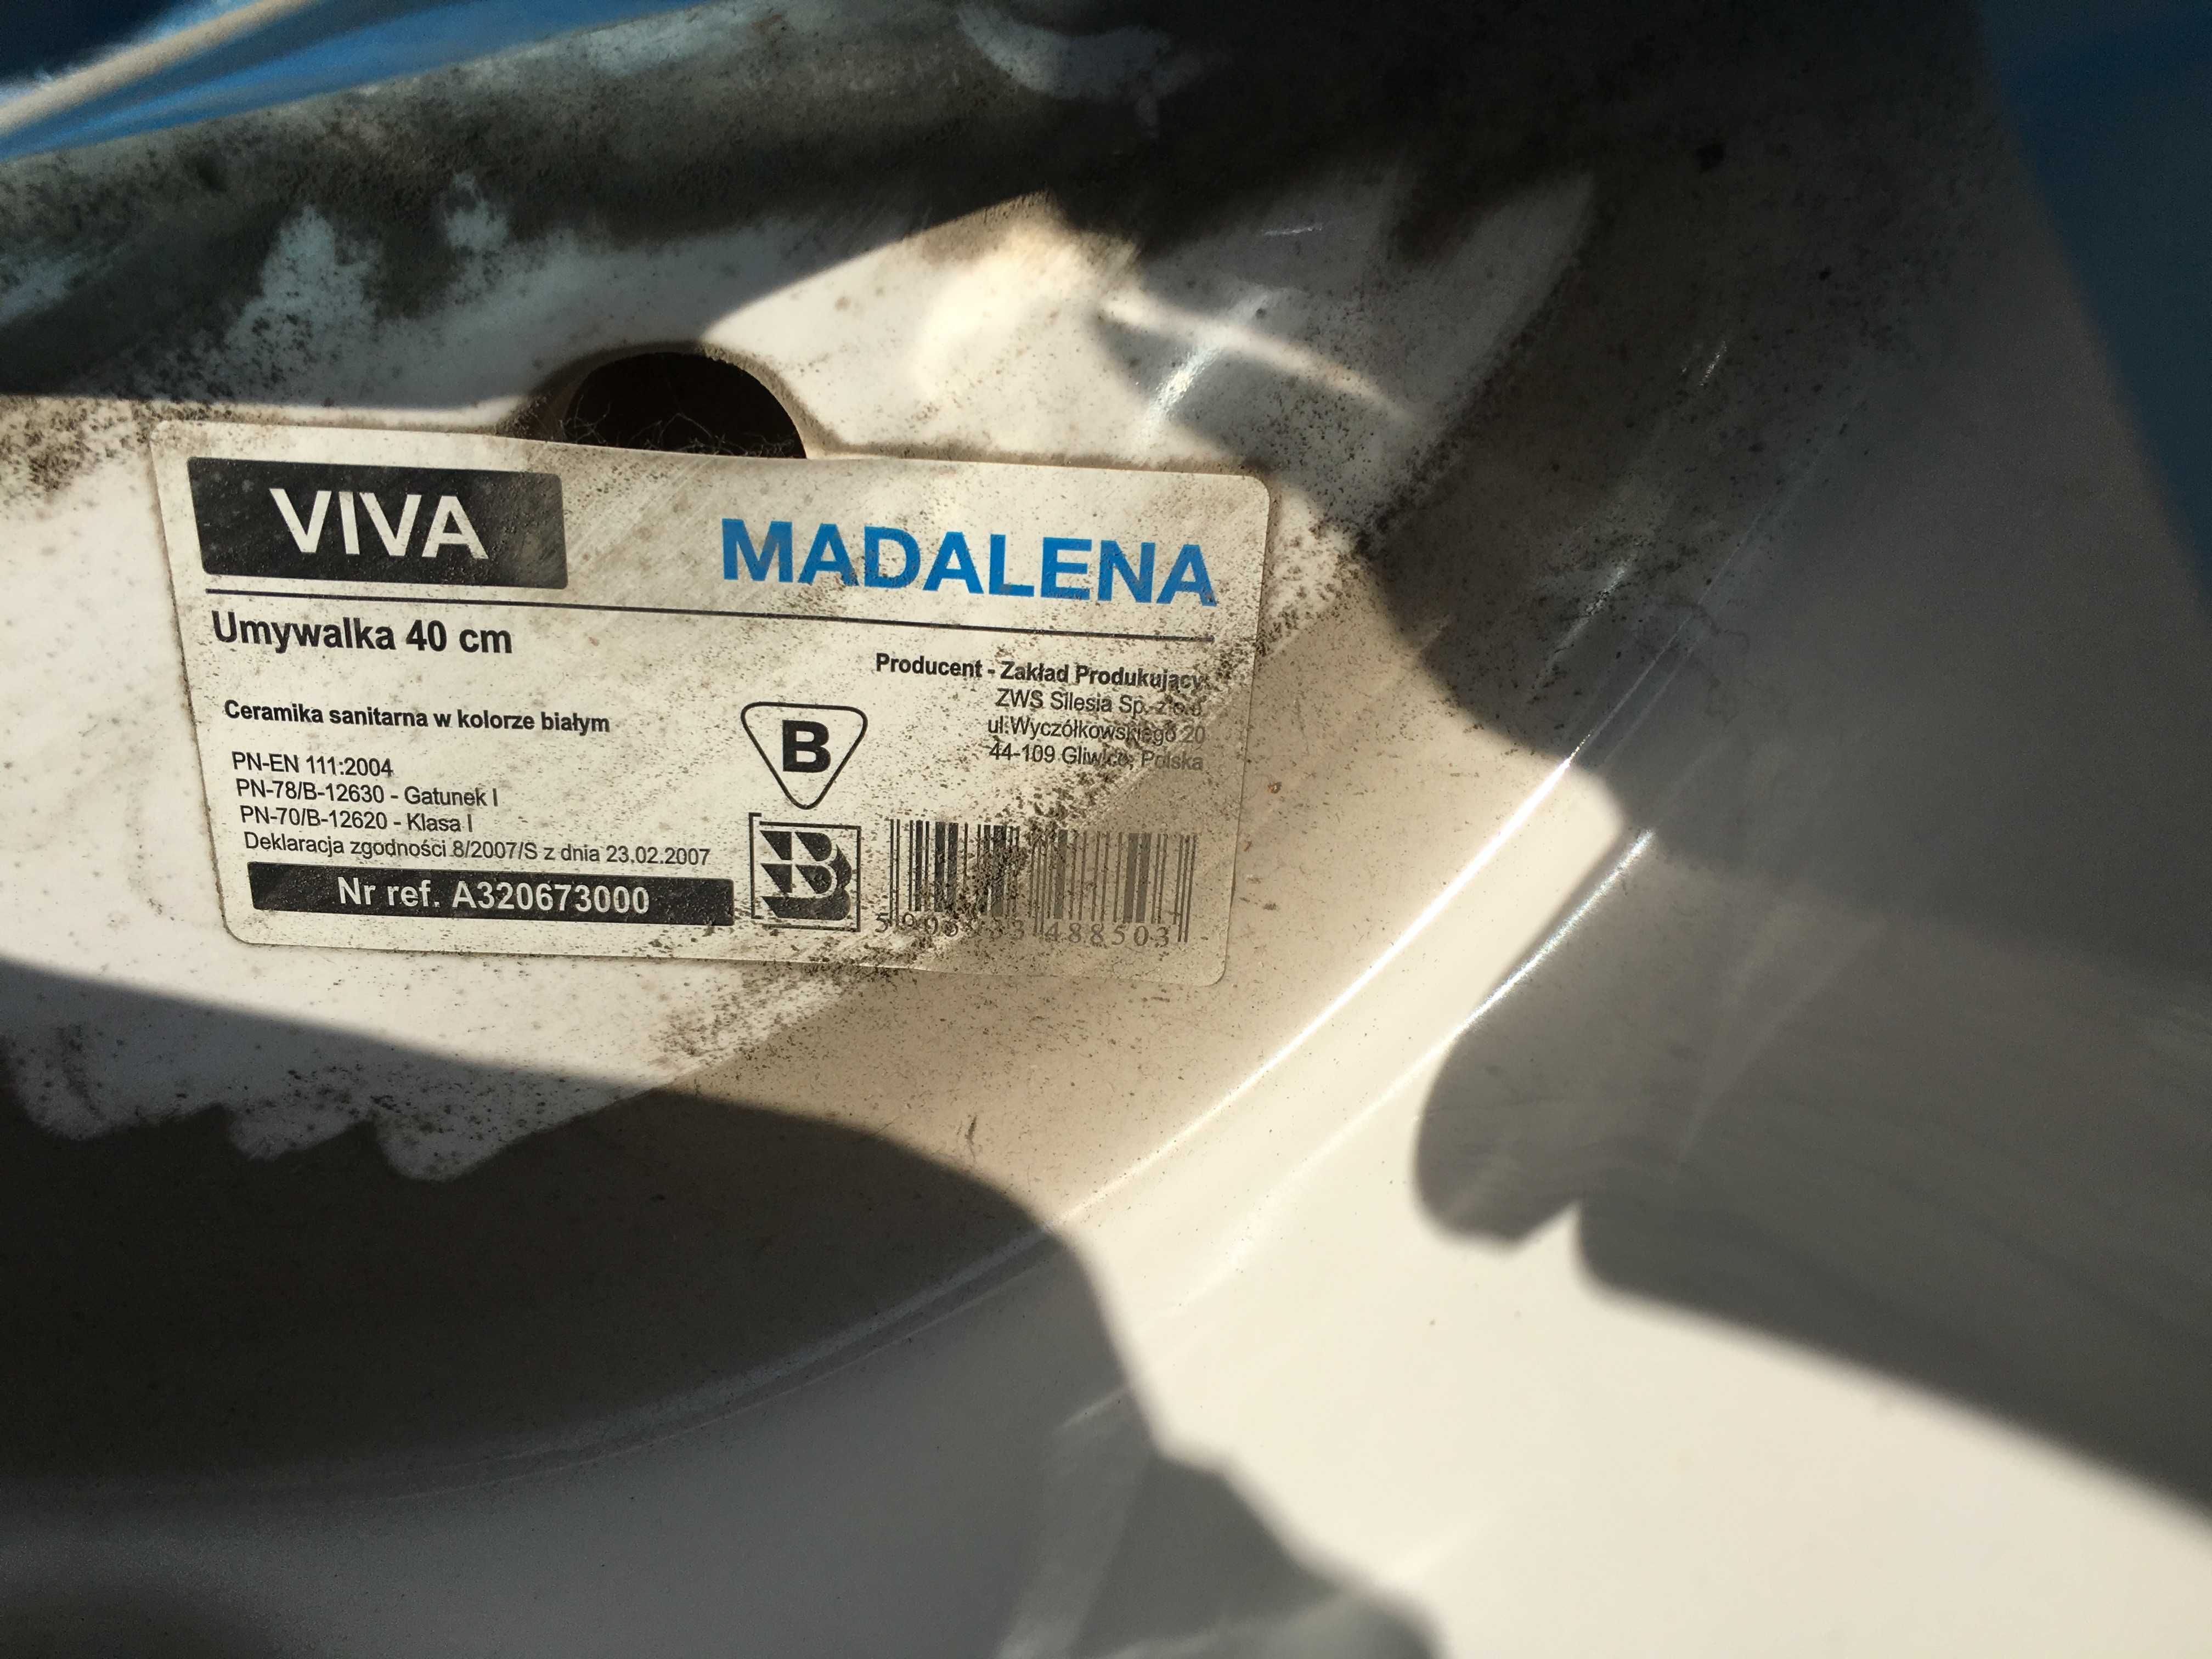 Umywalka podwieszana viva z serii madalena 41x37 firmy ROCA